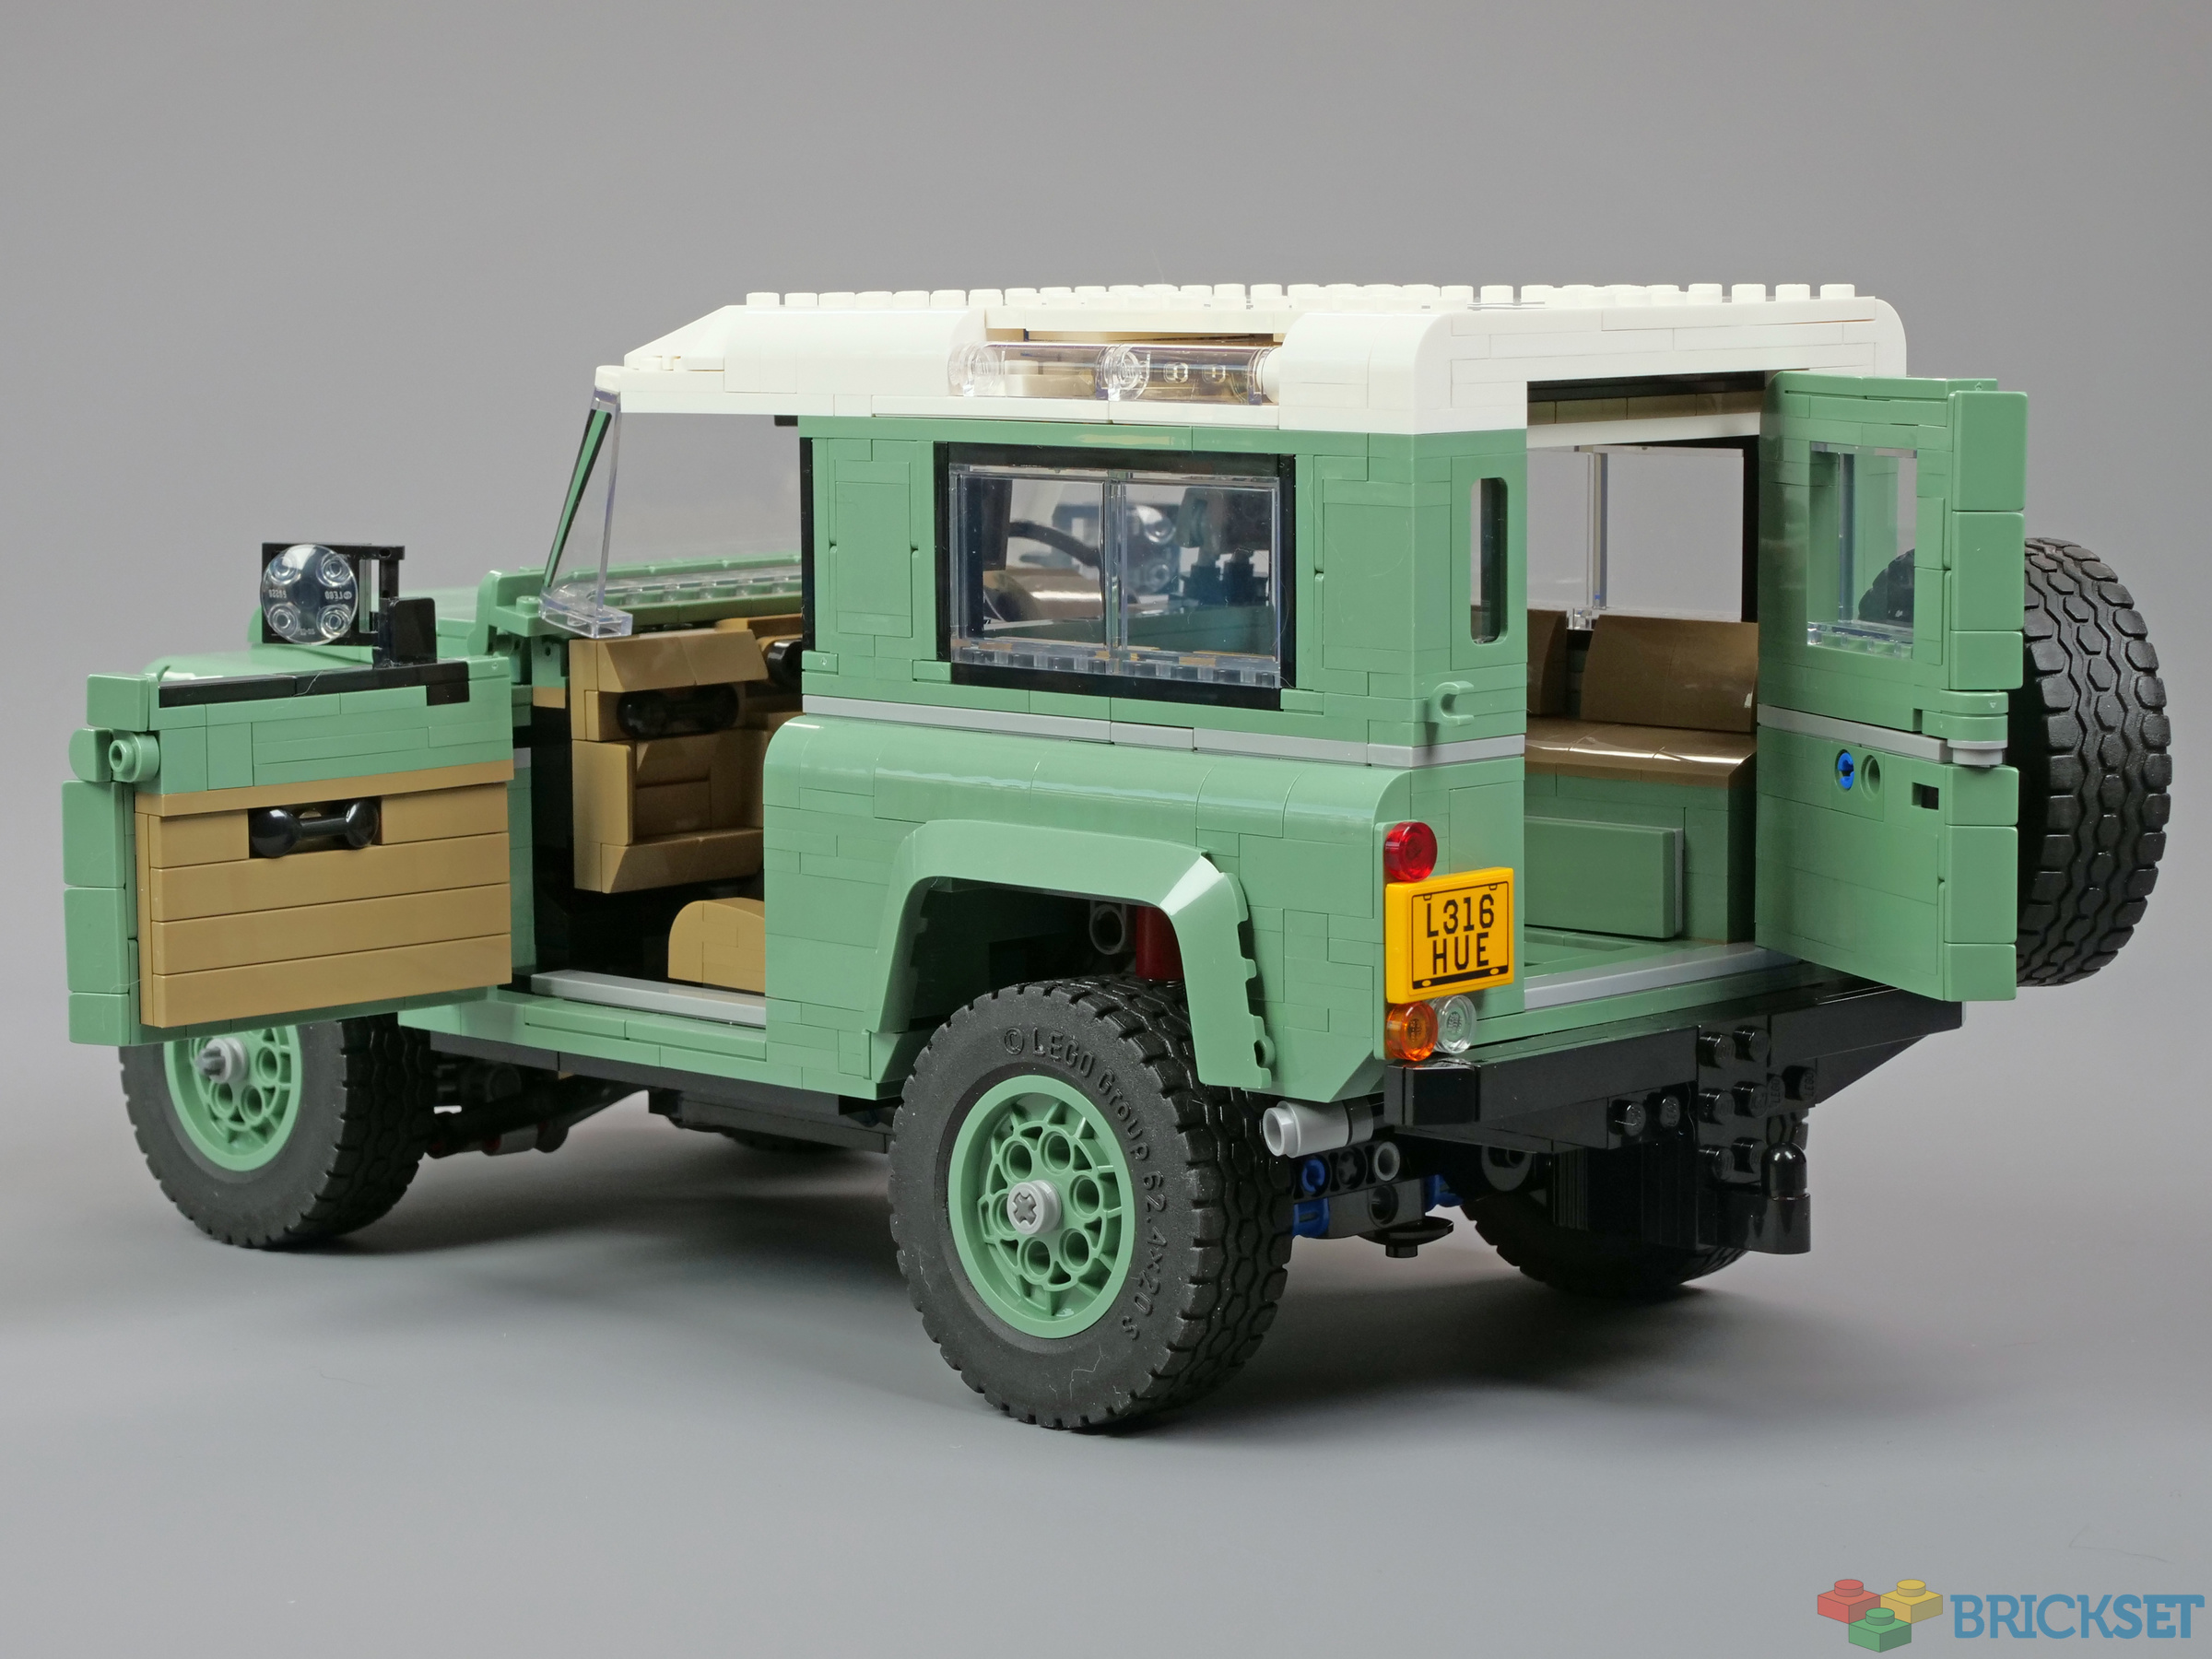 LEGO 10317 Land Rover Defender 90 review | Brickset